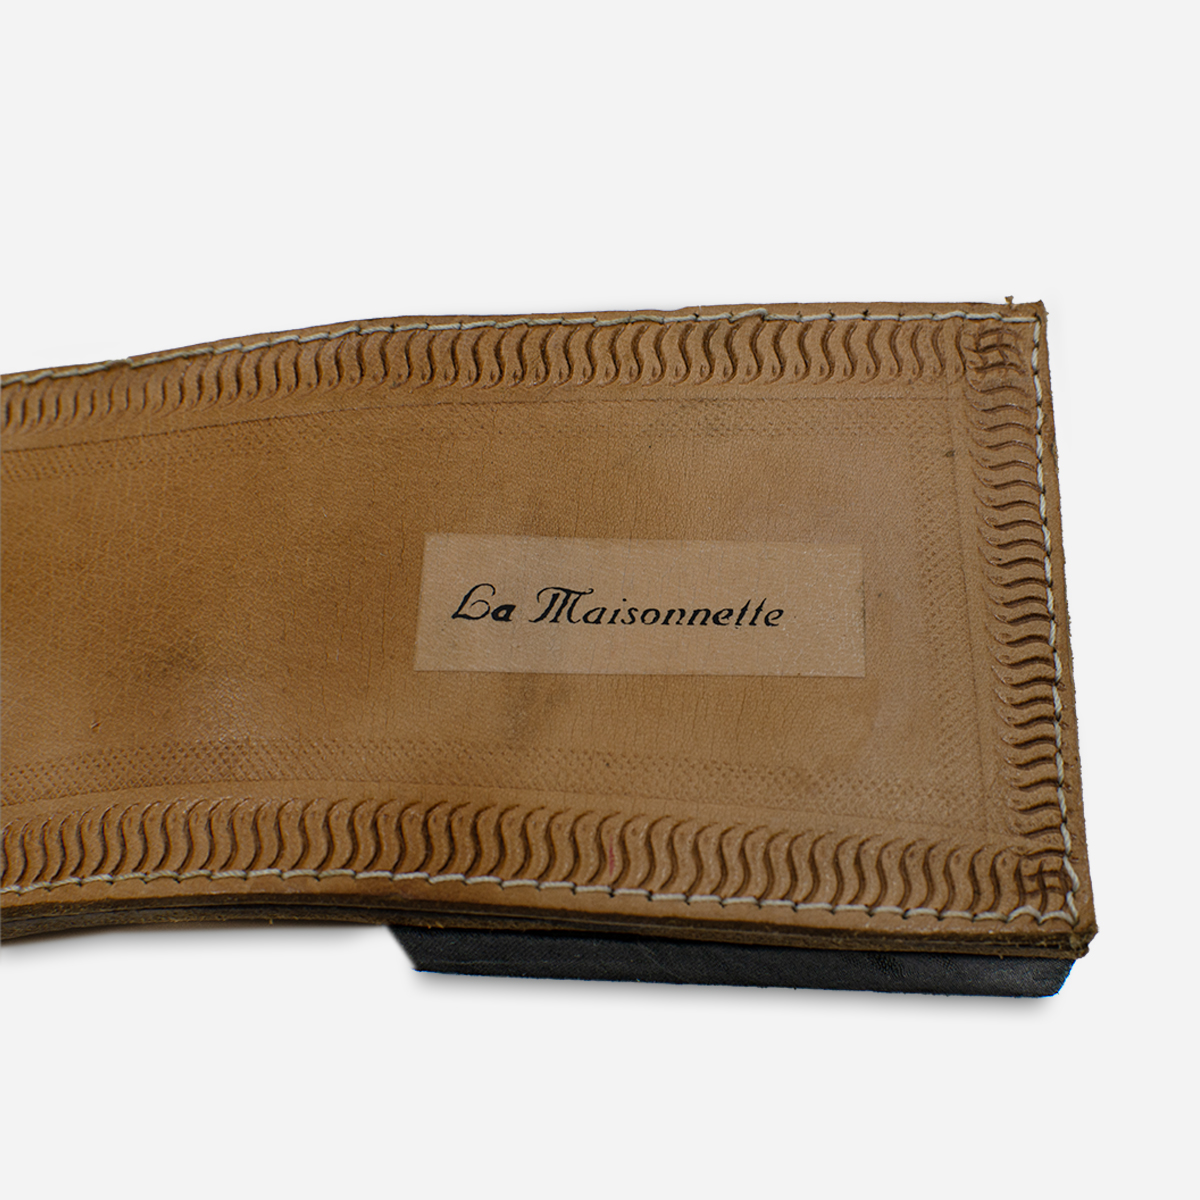 La Maisonnette leather slides